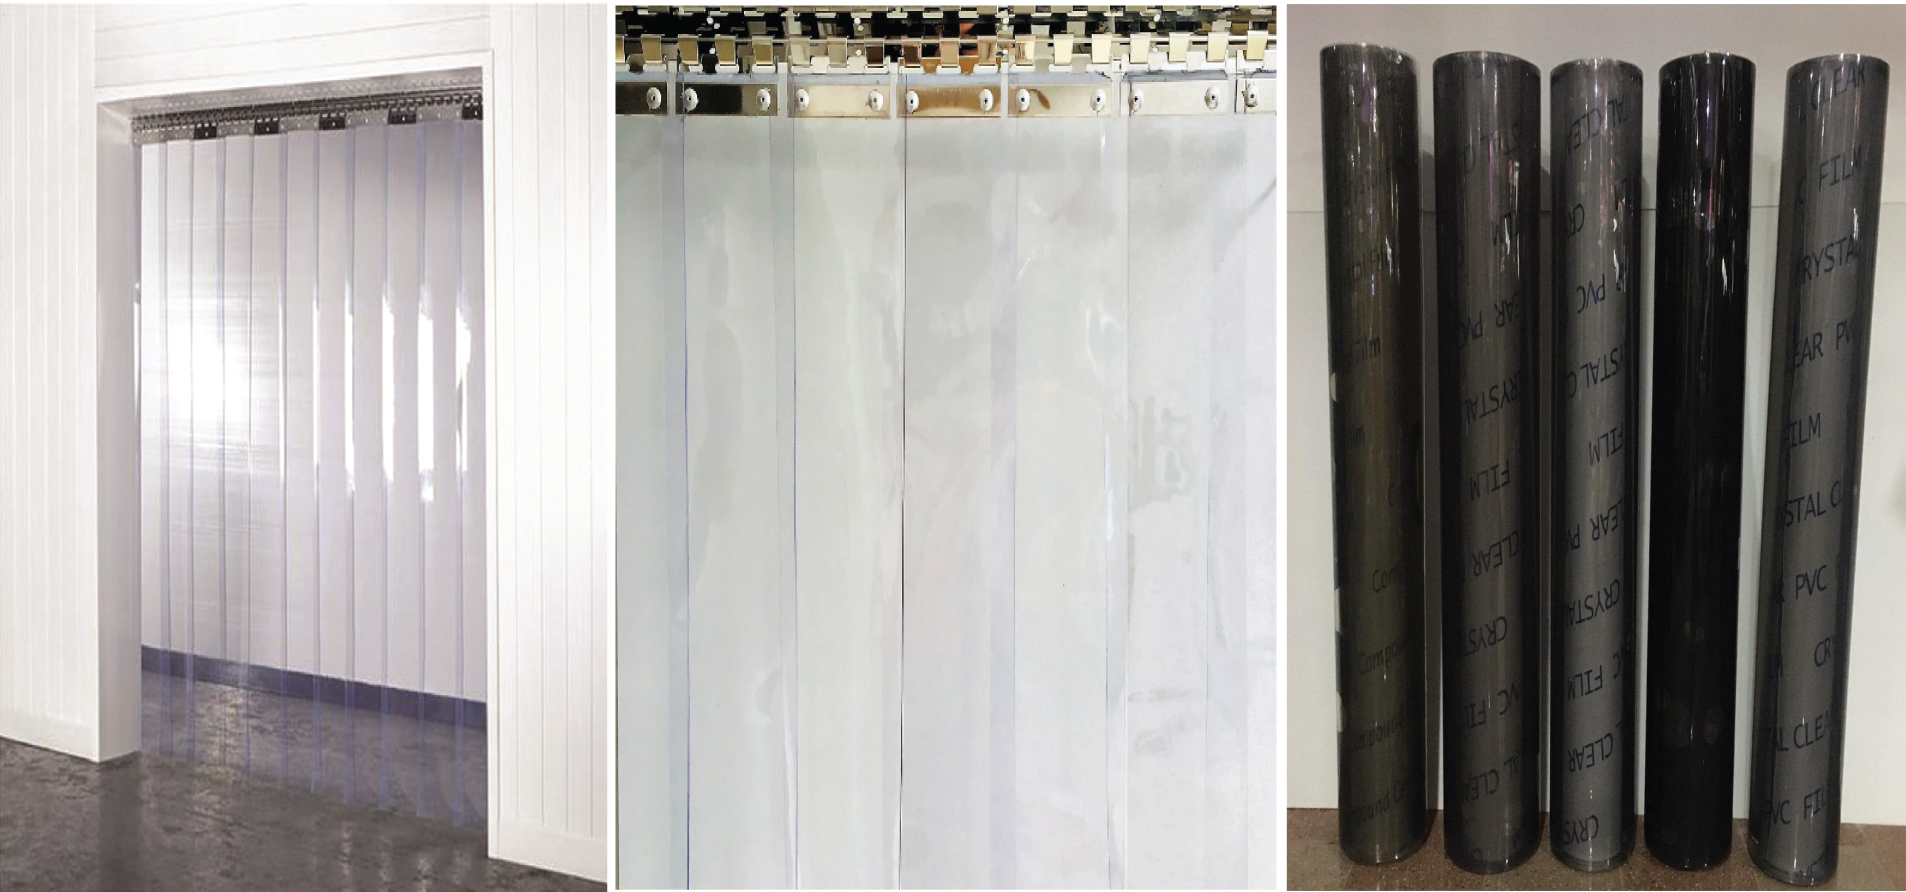 Chọn rèm nhựa PVC có độ cứng phù hợp